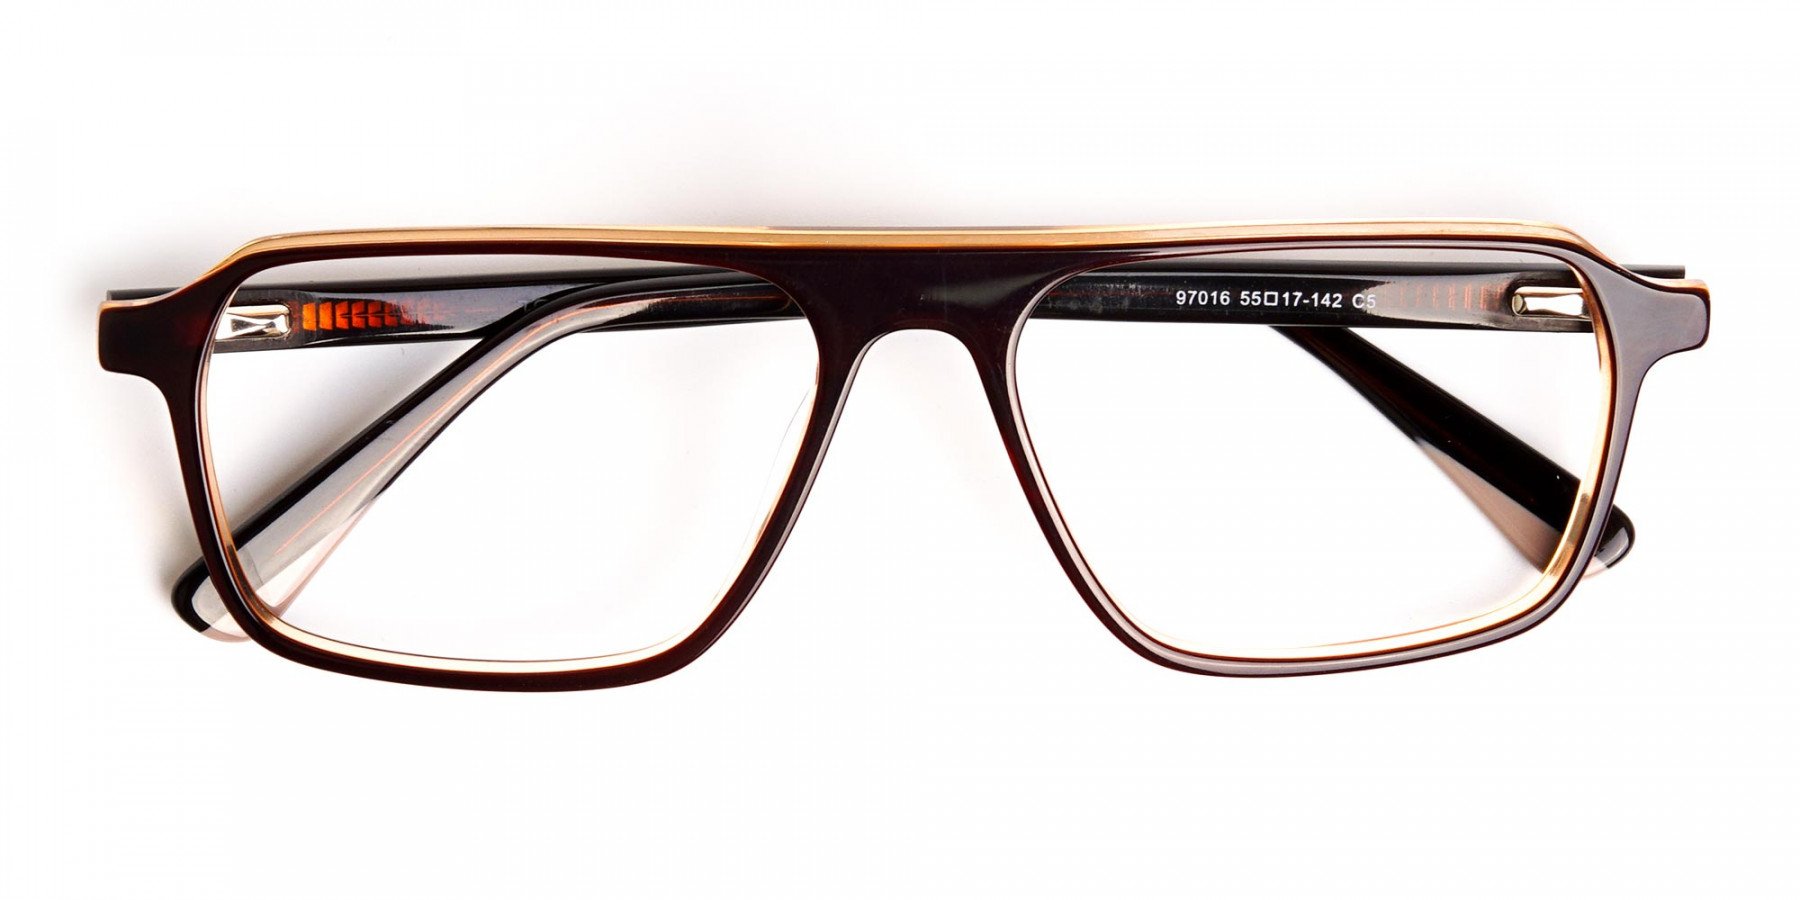 Brown-and-Black-Rectangular-Full-Rim-Glasses-frames-1